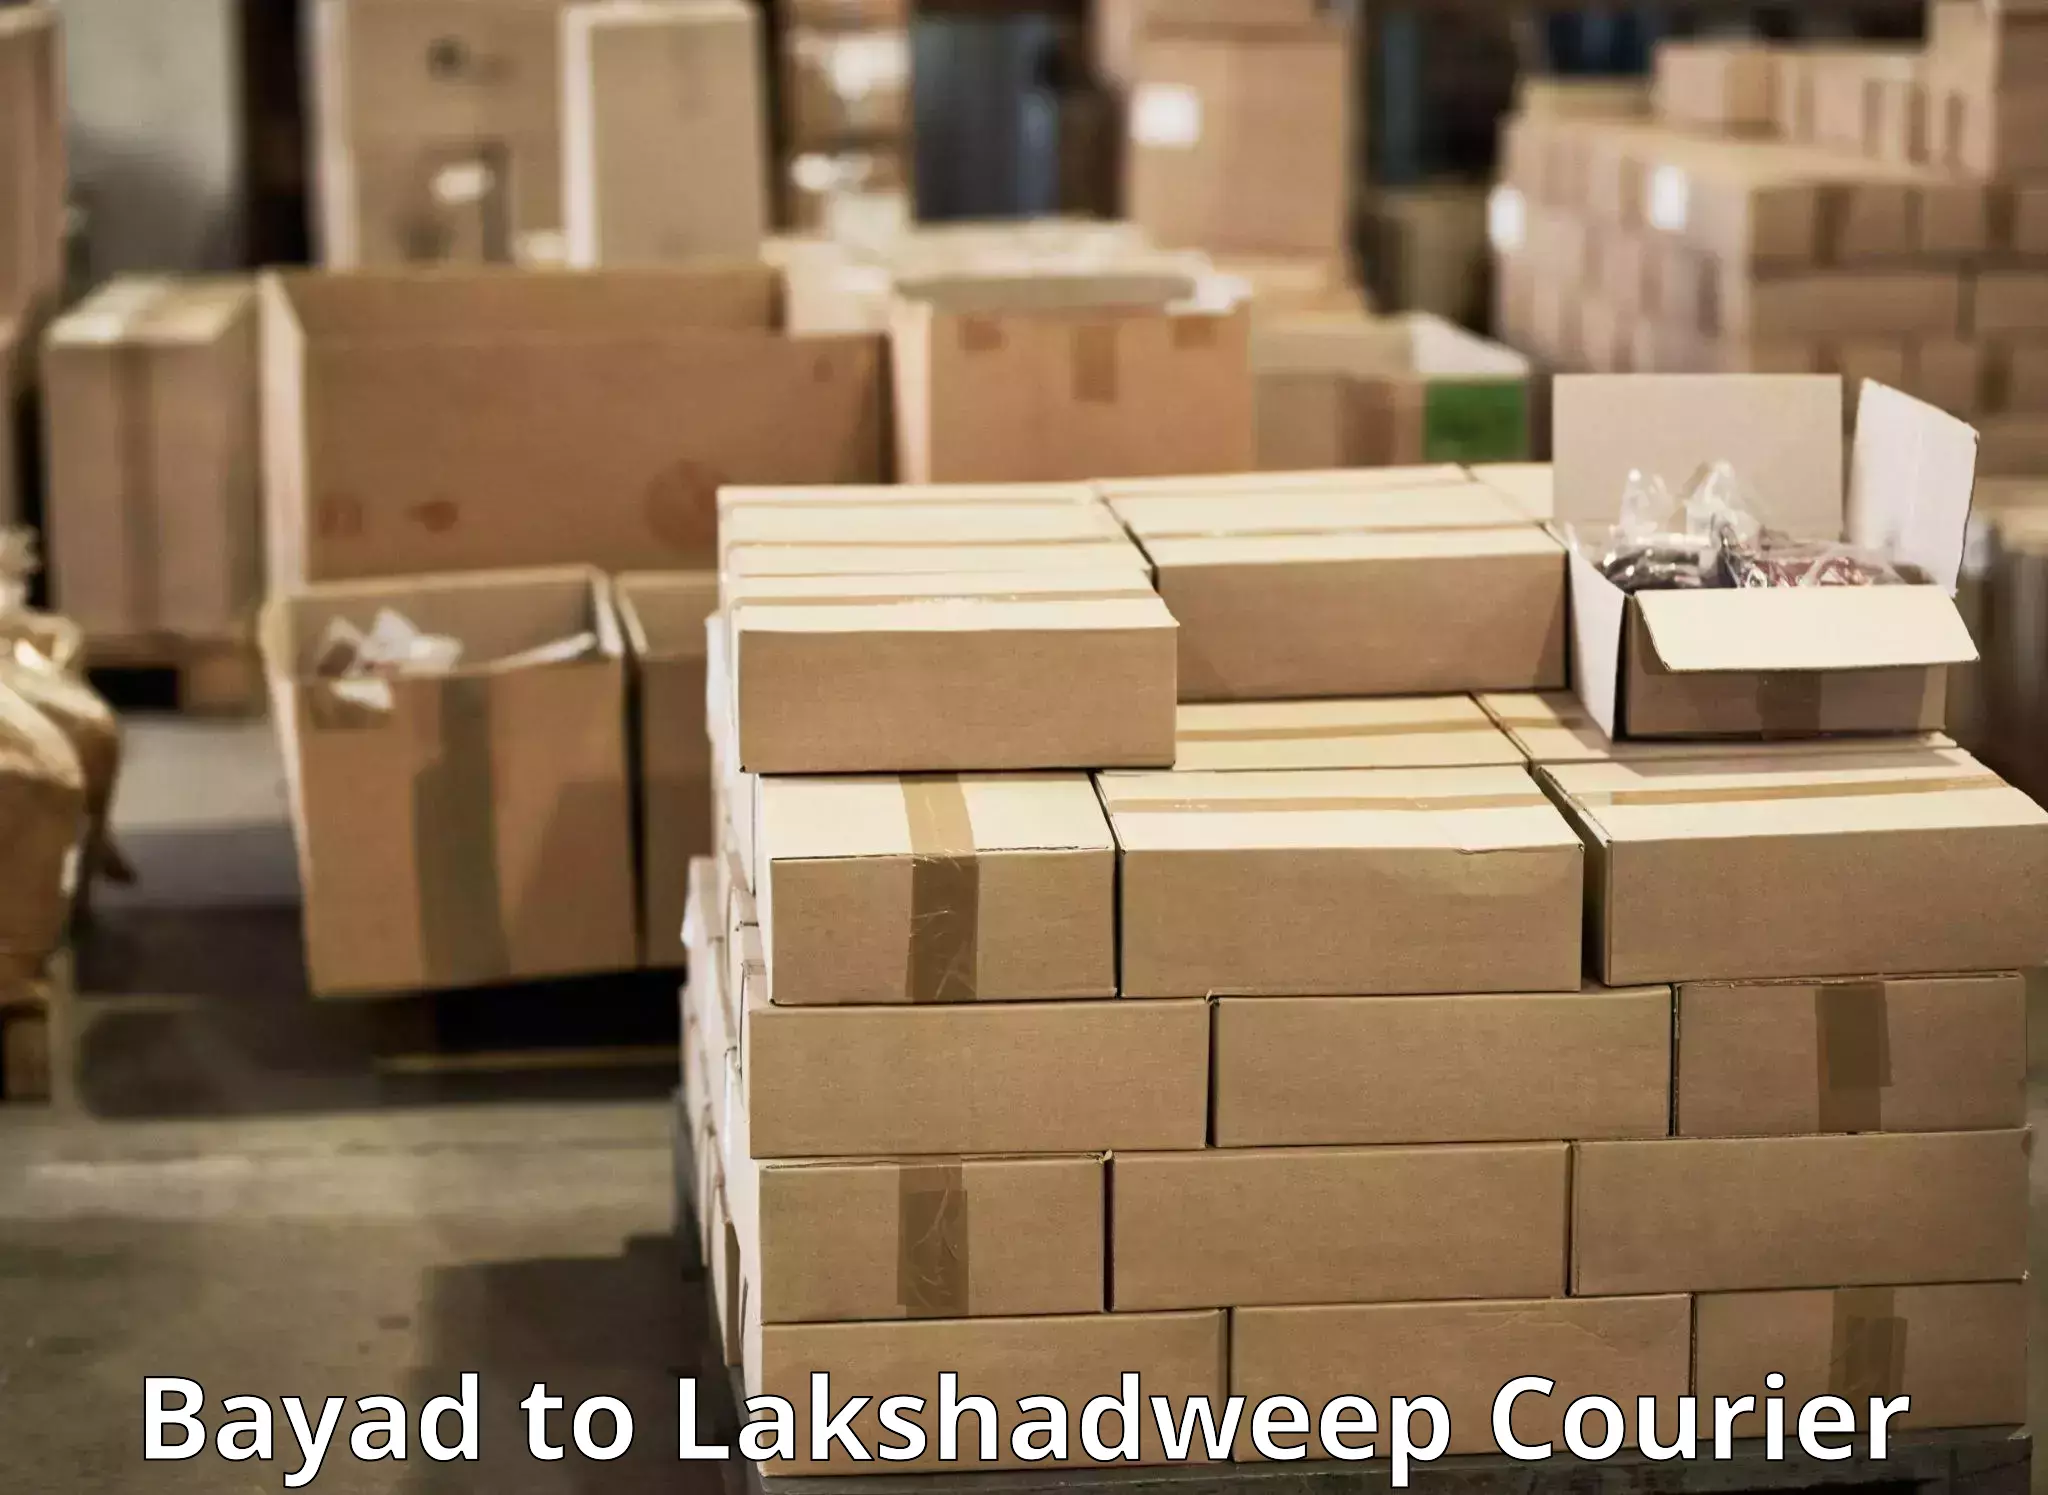 Express mail solutions Bayad to Lakshadweep